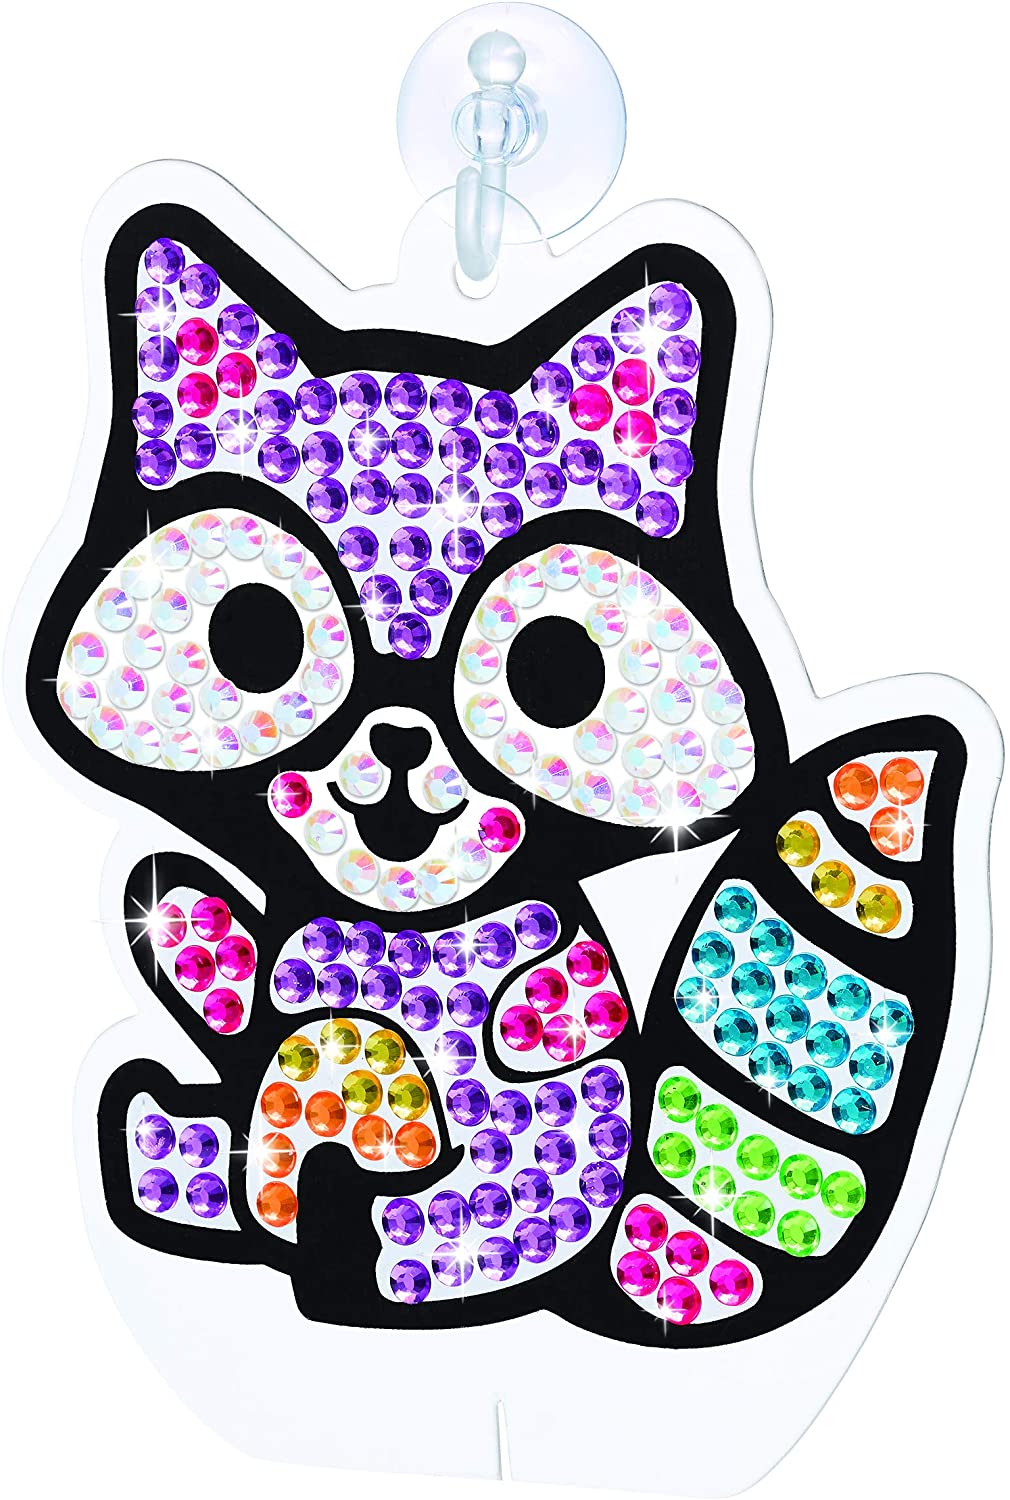 Faber-Castell Creativity for Kids Sticker Suncatchers - Make Your Own  Animal Sun Catcher Kit for Kids